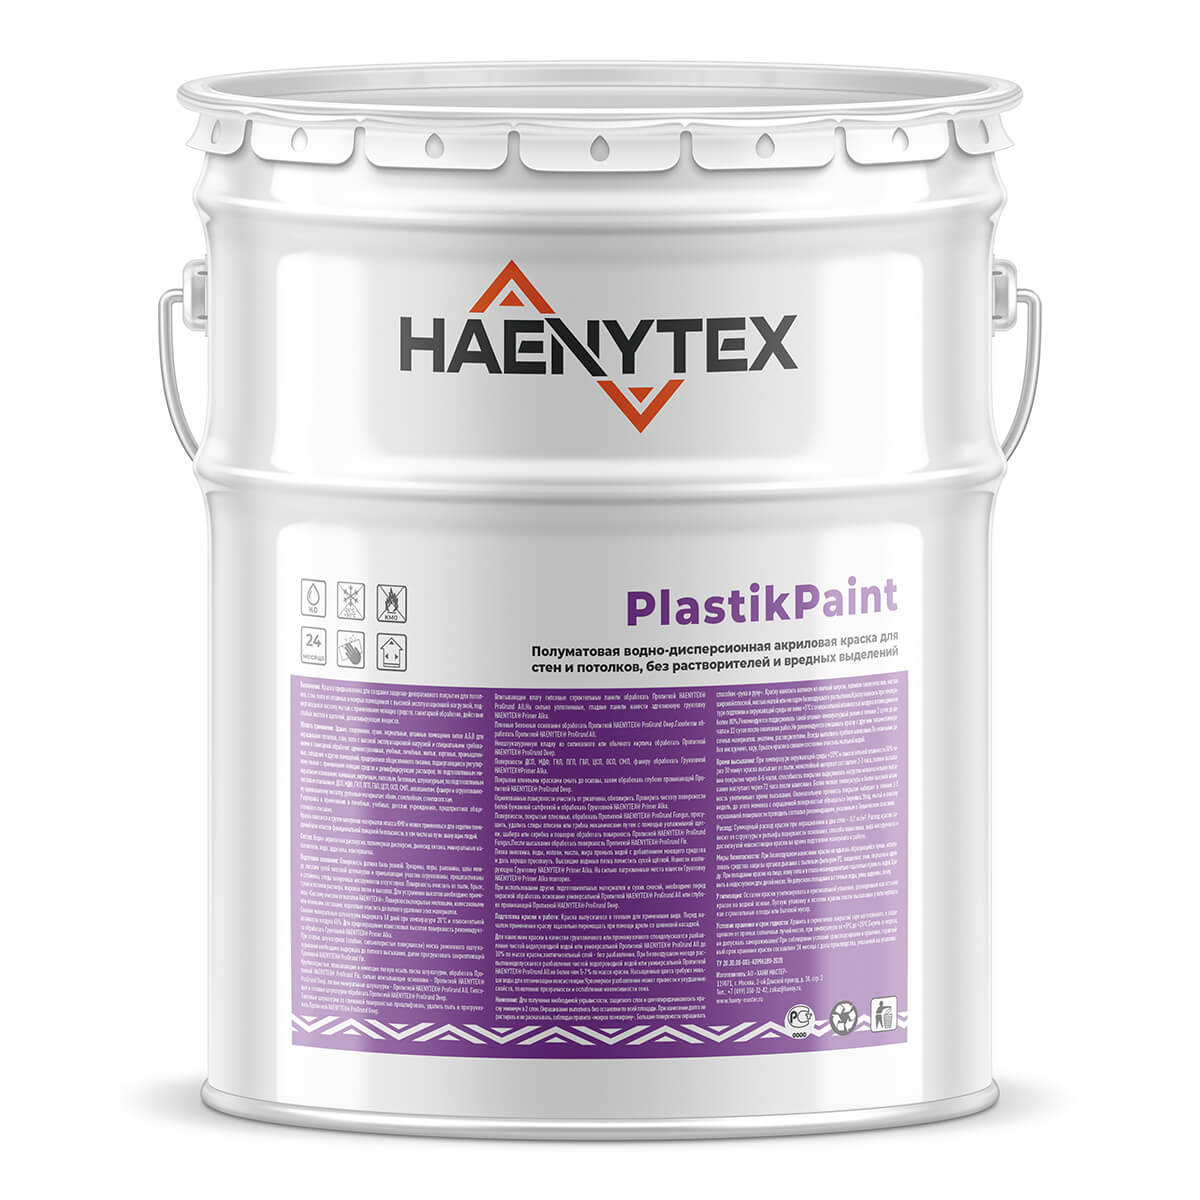 HAENYTEX® PlastikPaint